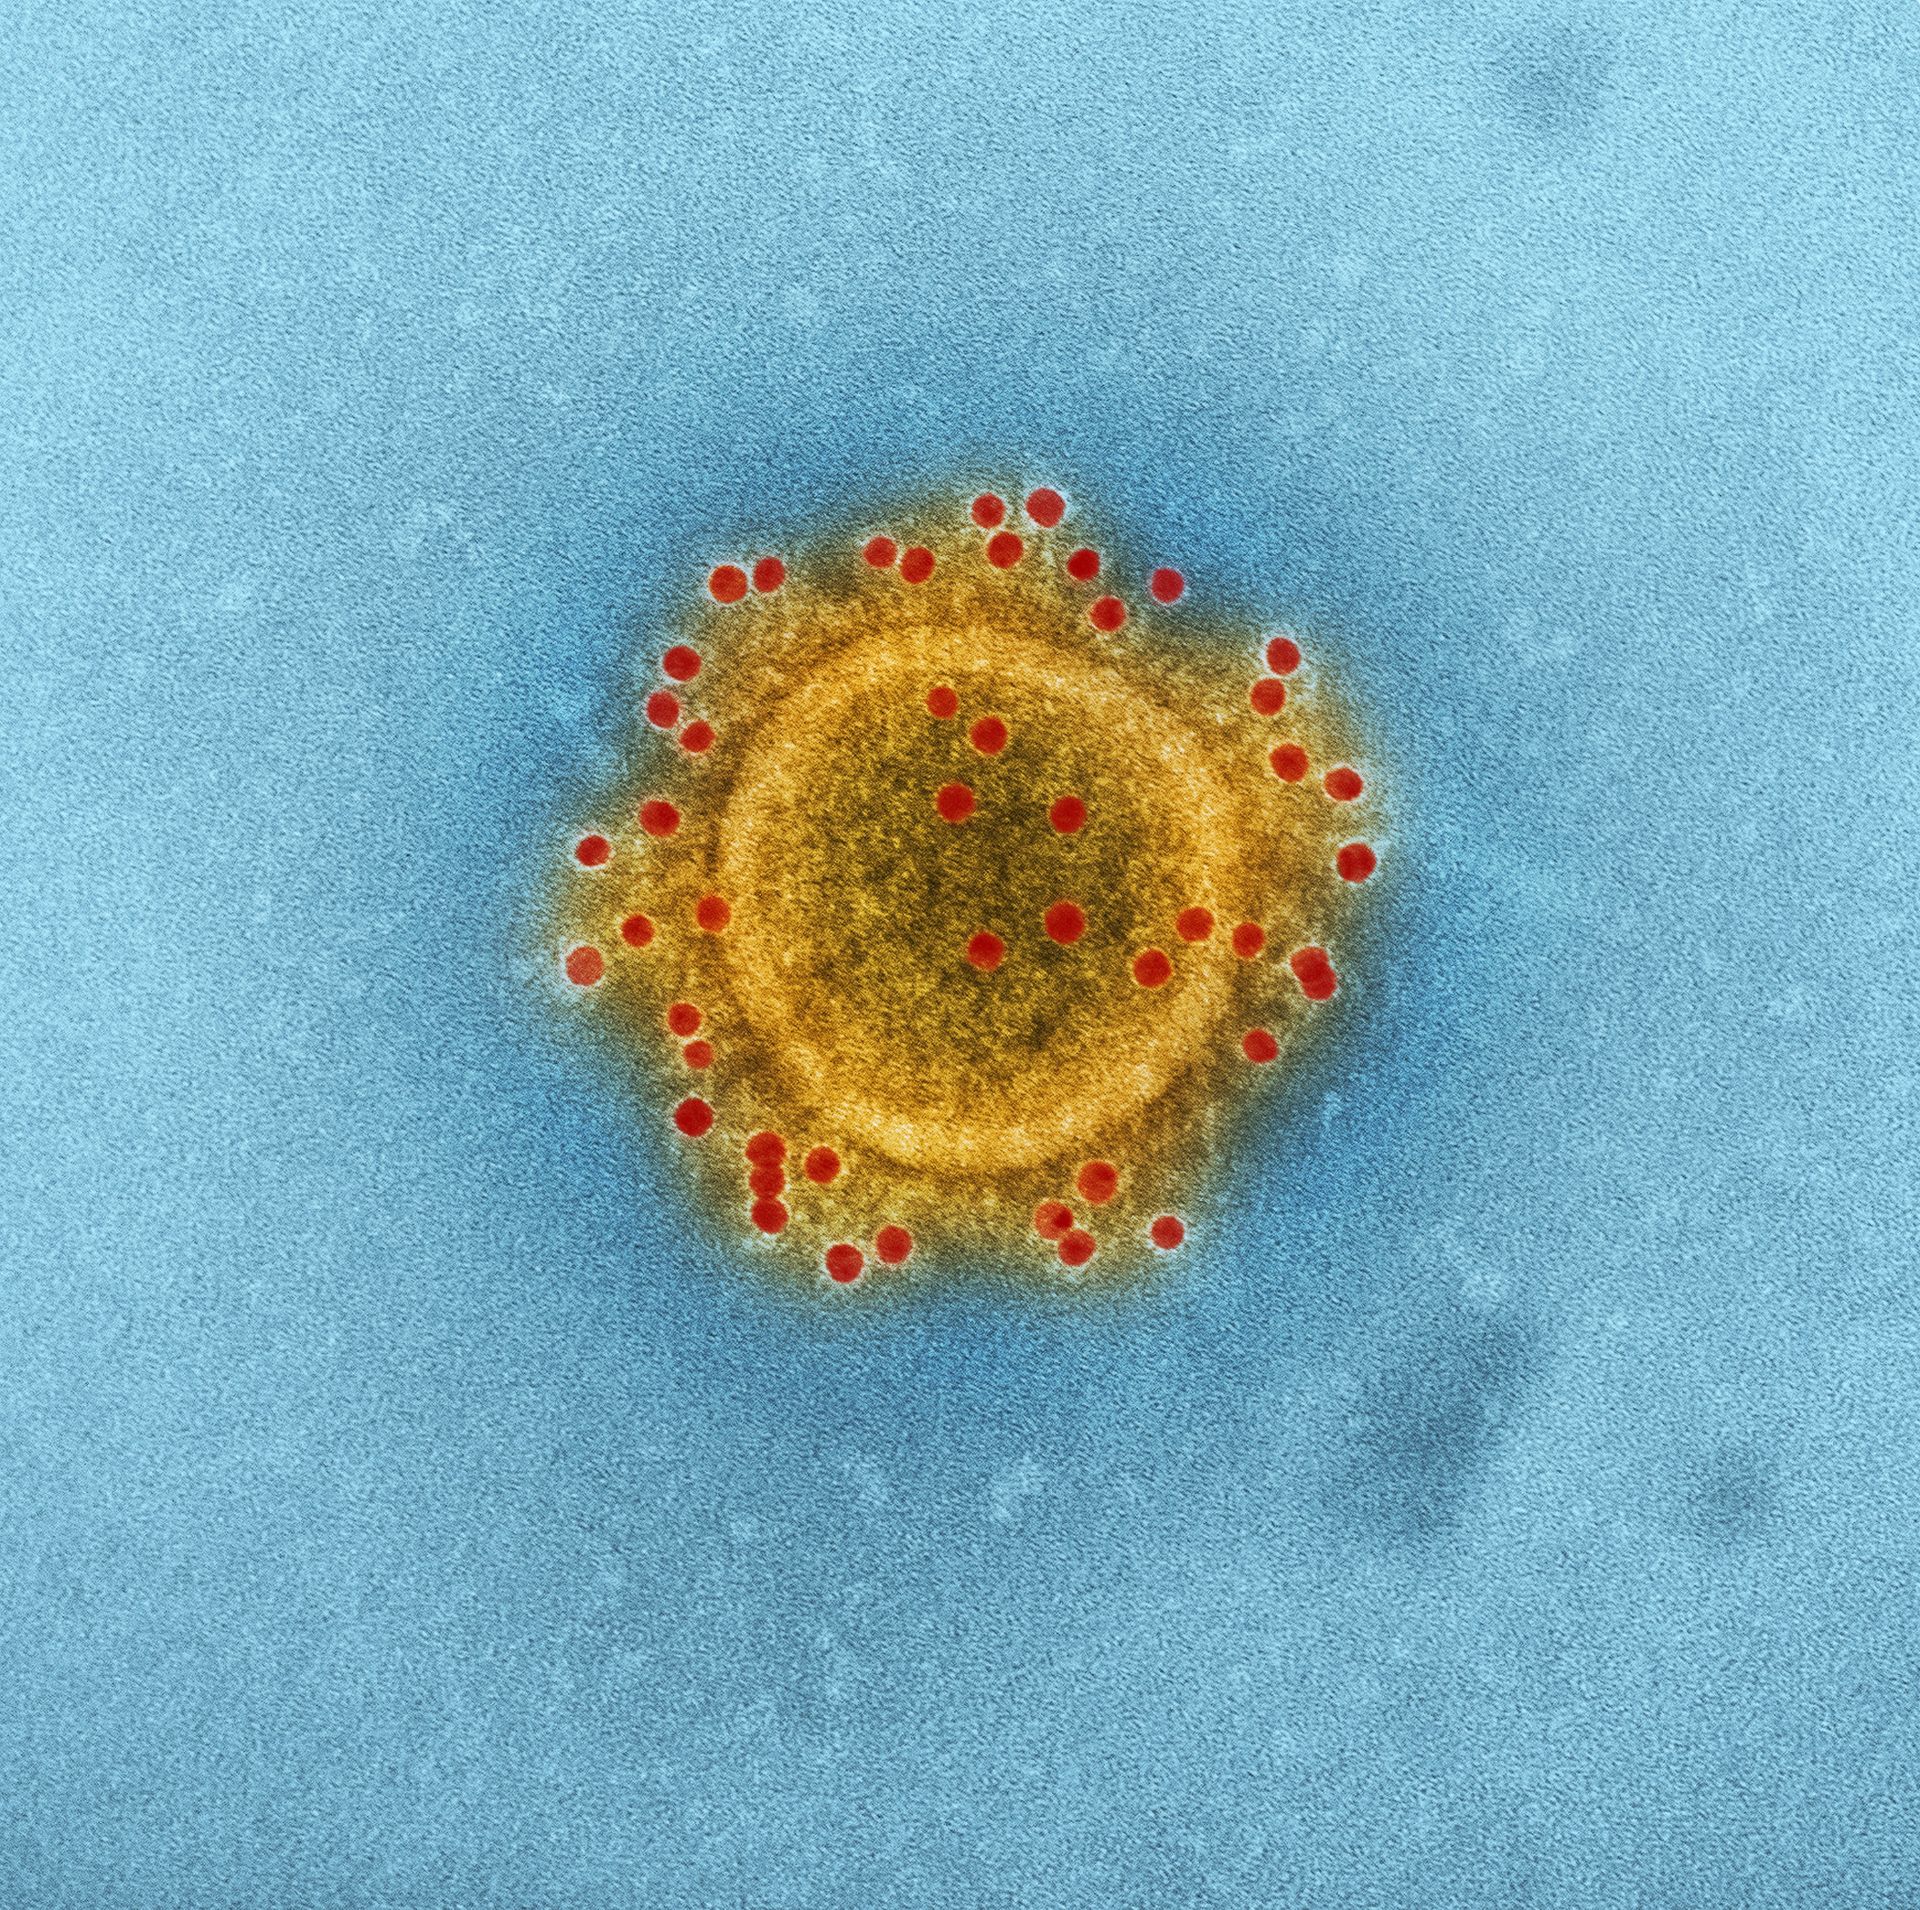 cdc-virus-coronavirus